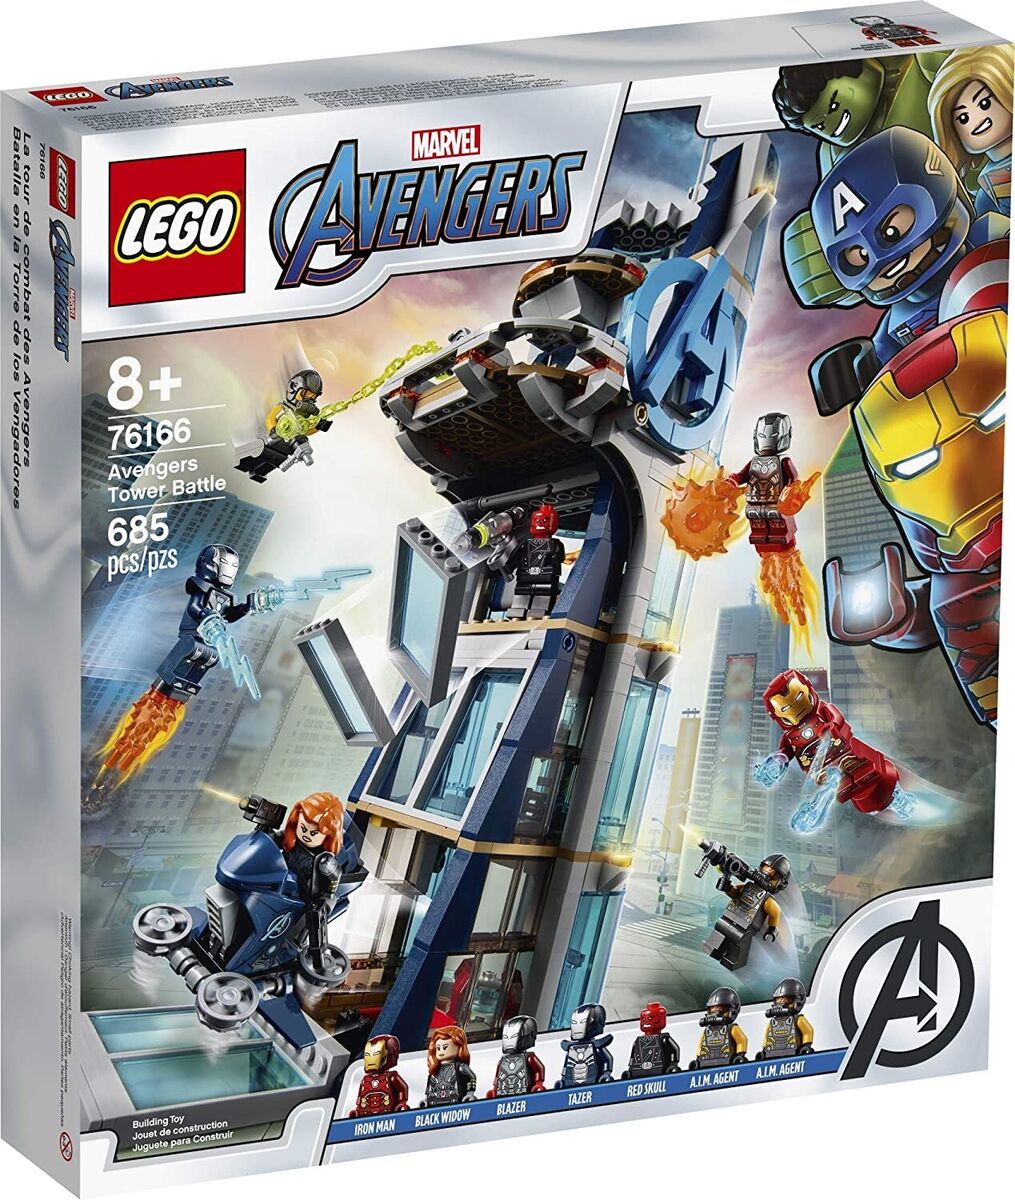 LEGO Marvel Super Heroes Avengers Tower Battle 76166